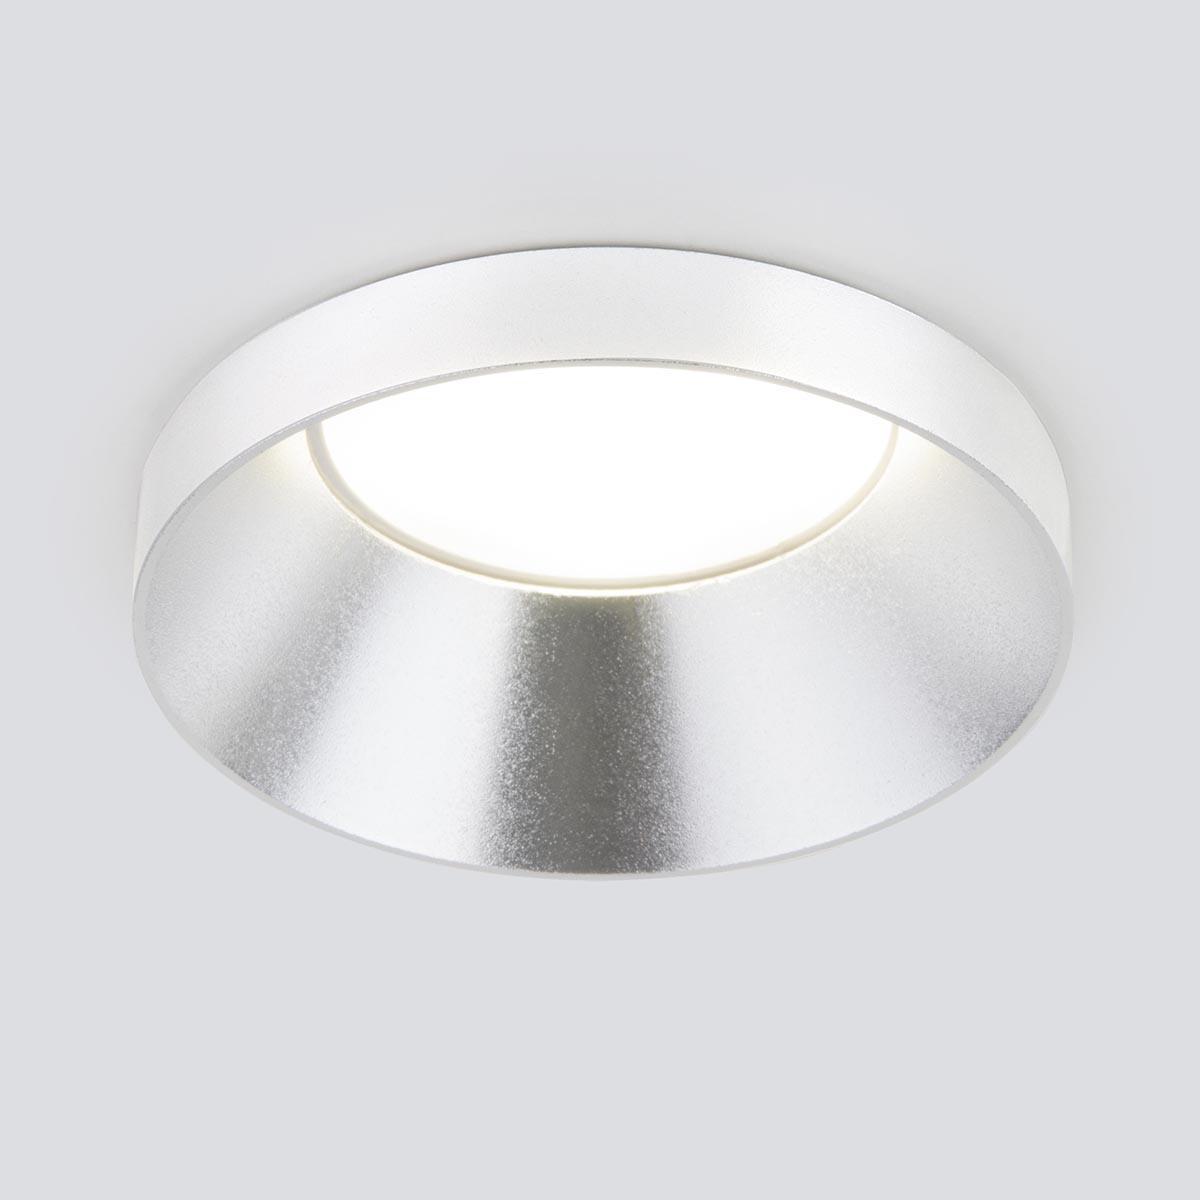 Встраиваемый светильник Elektrostandard 111 MR16 серебро a053335